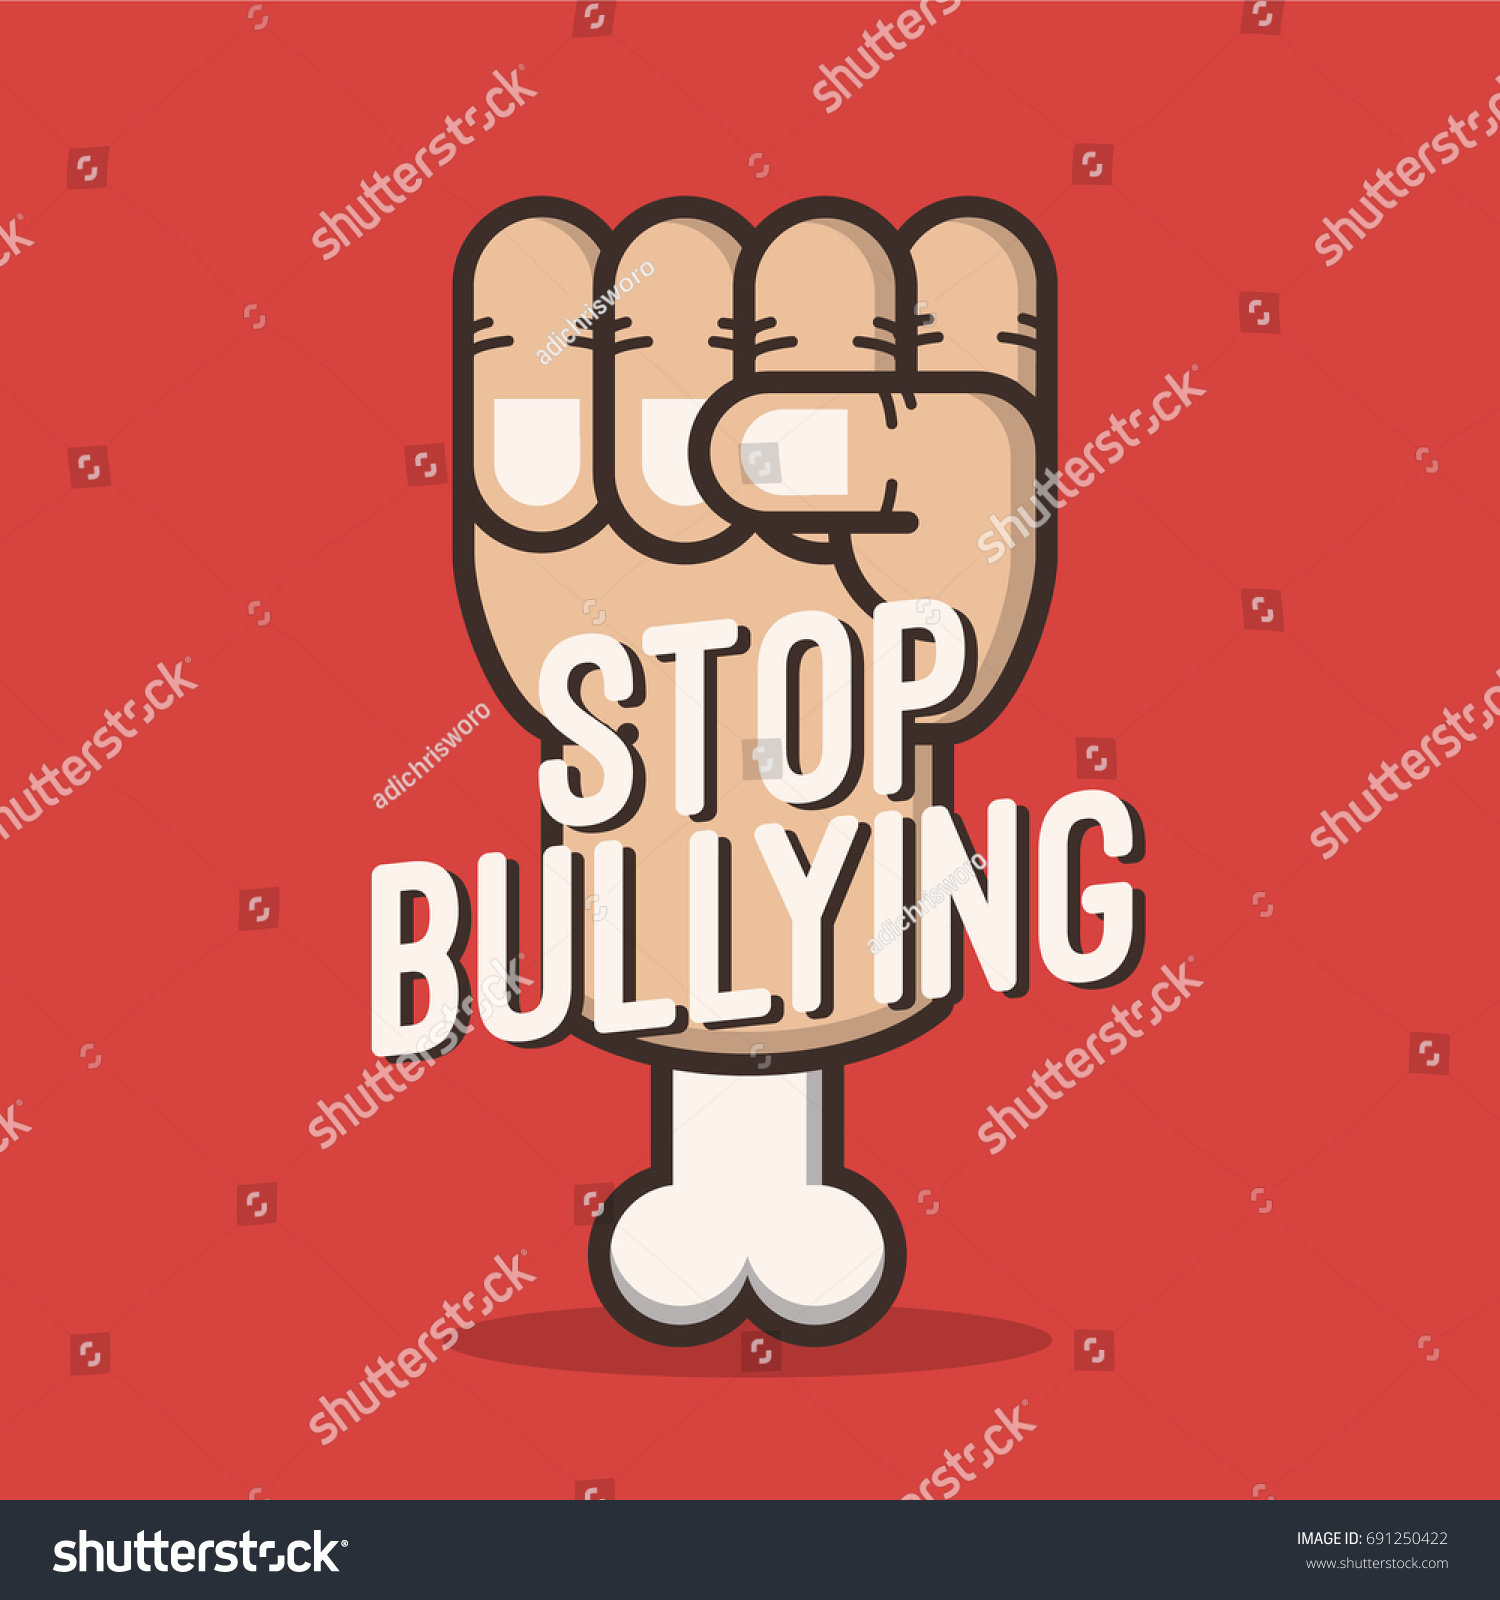 Bullying poster 10 Best